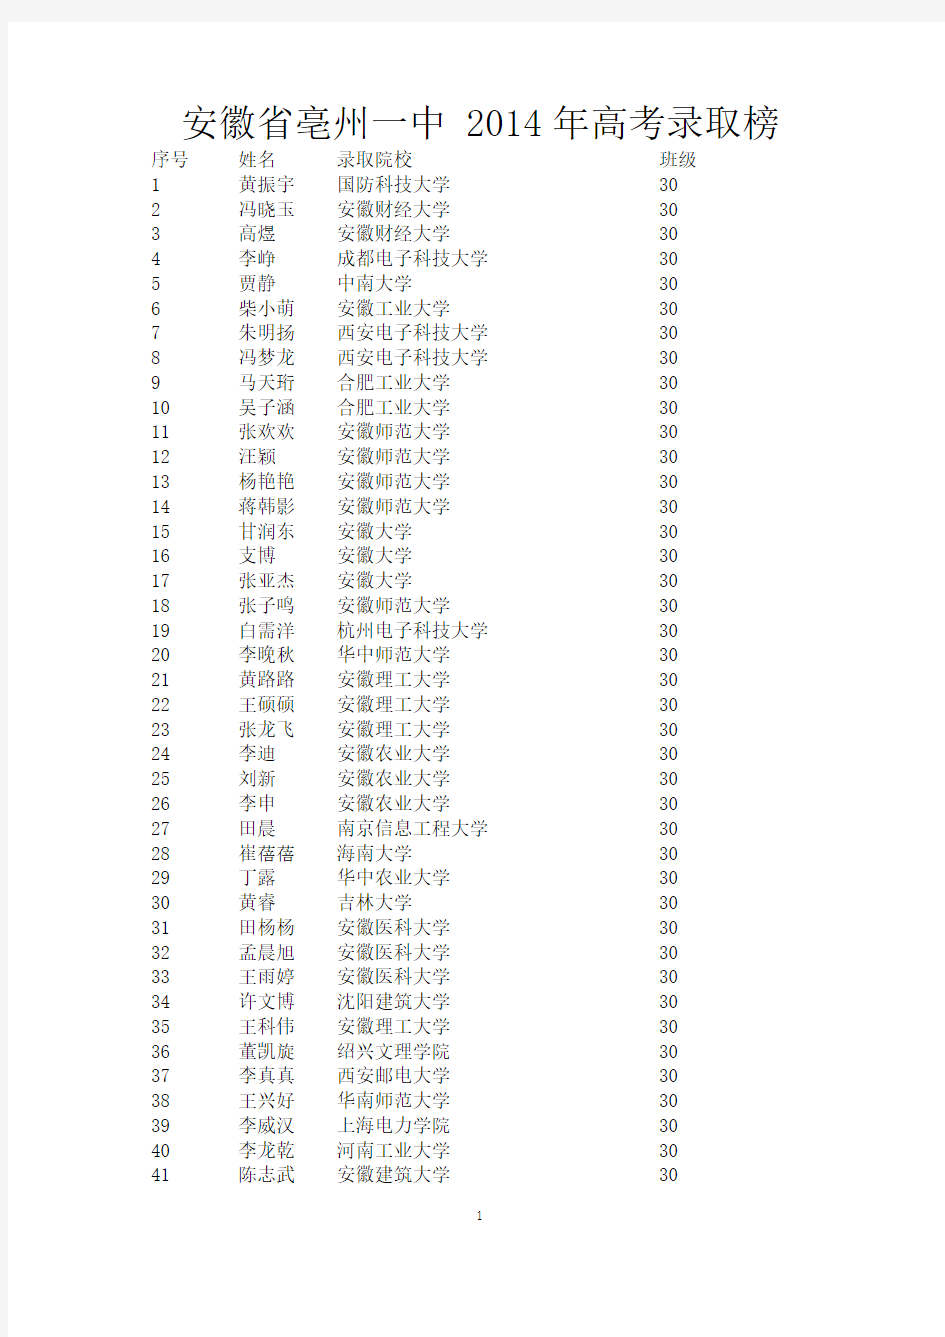 安徽省亳州一中 2014年高考录取榜